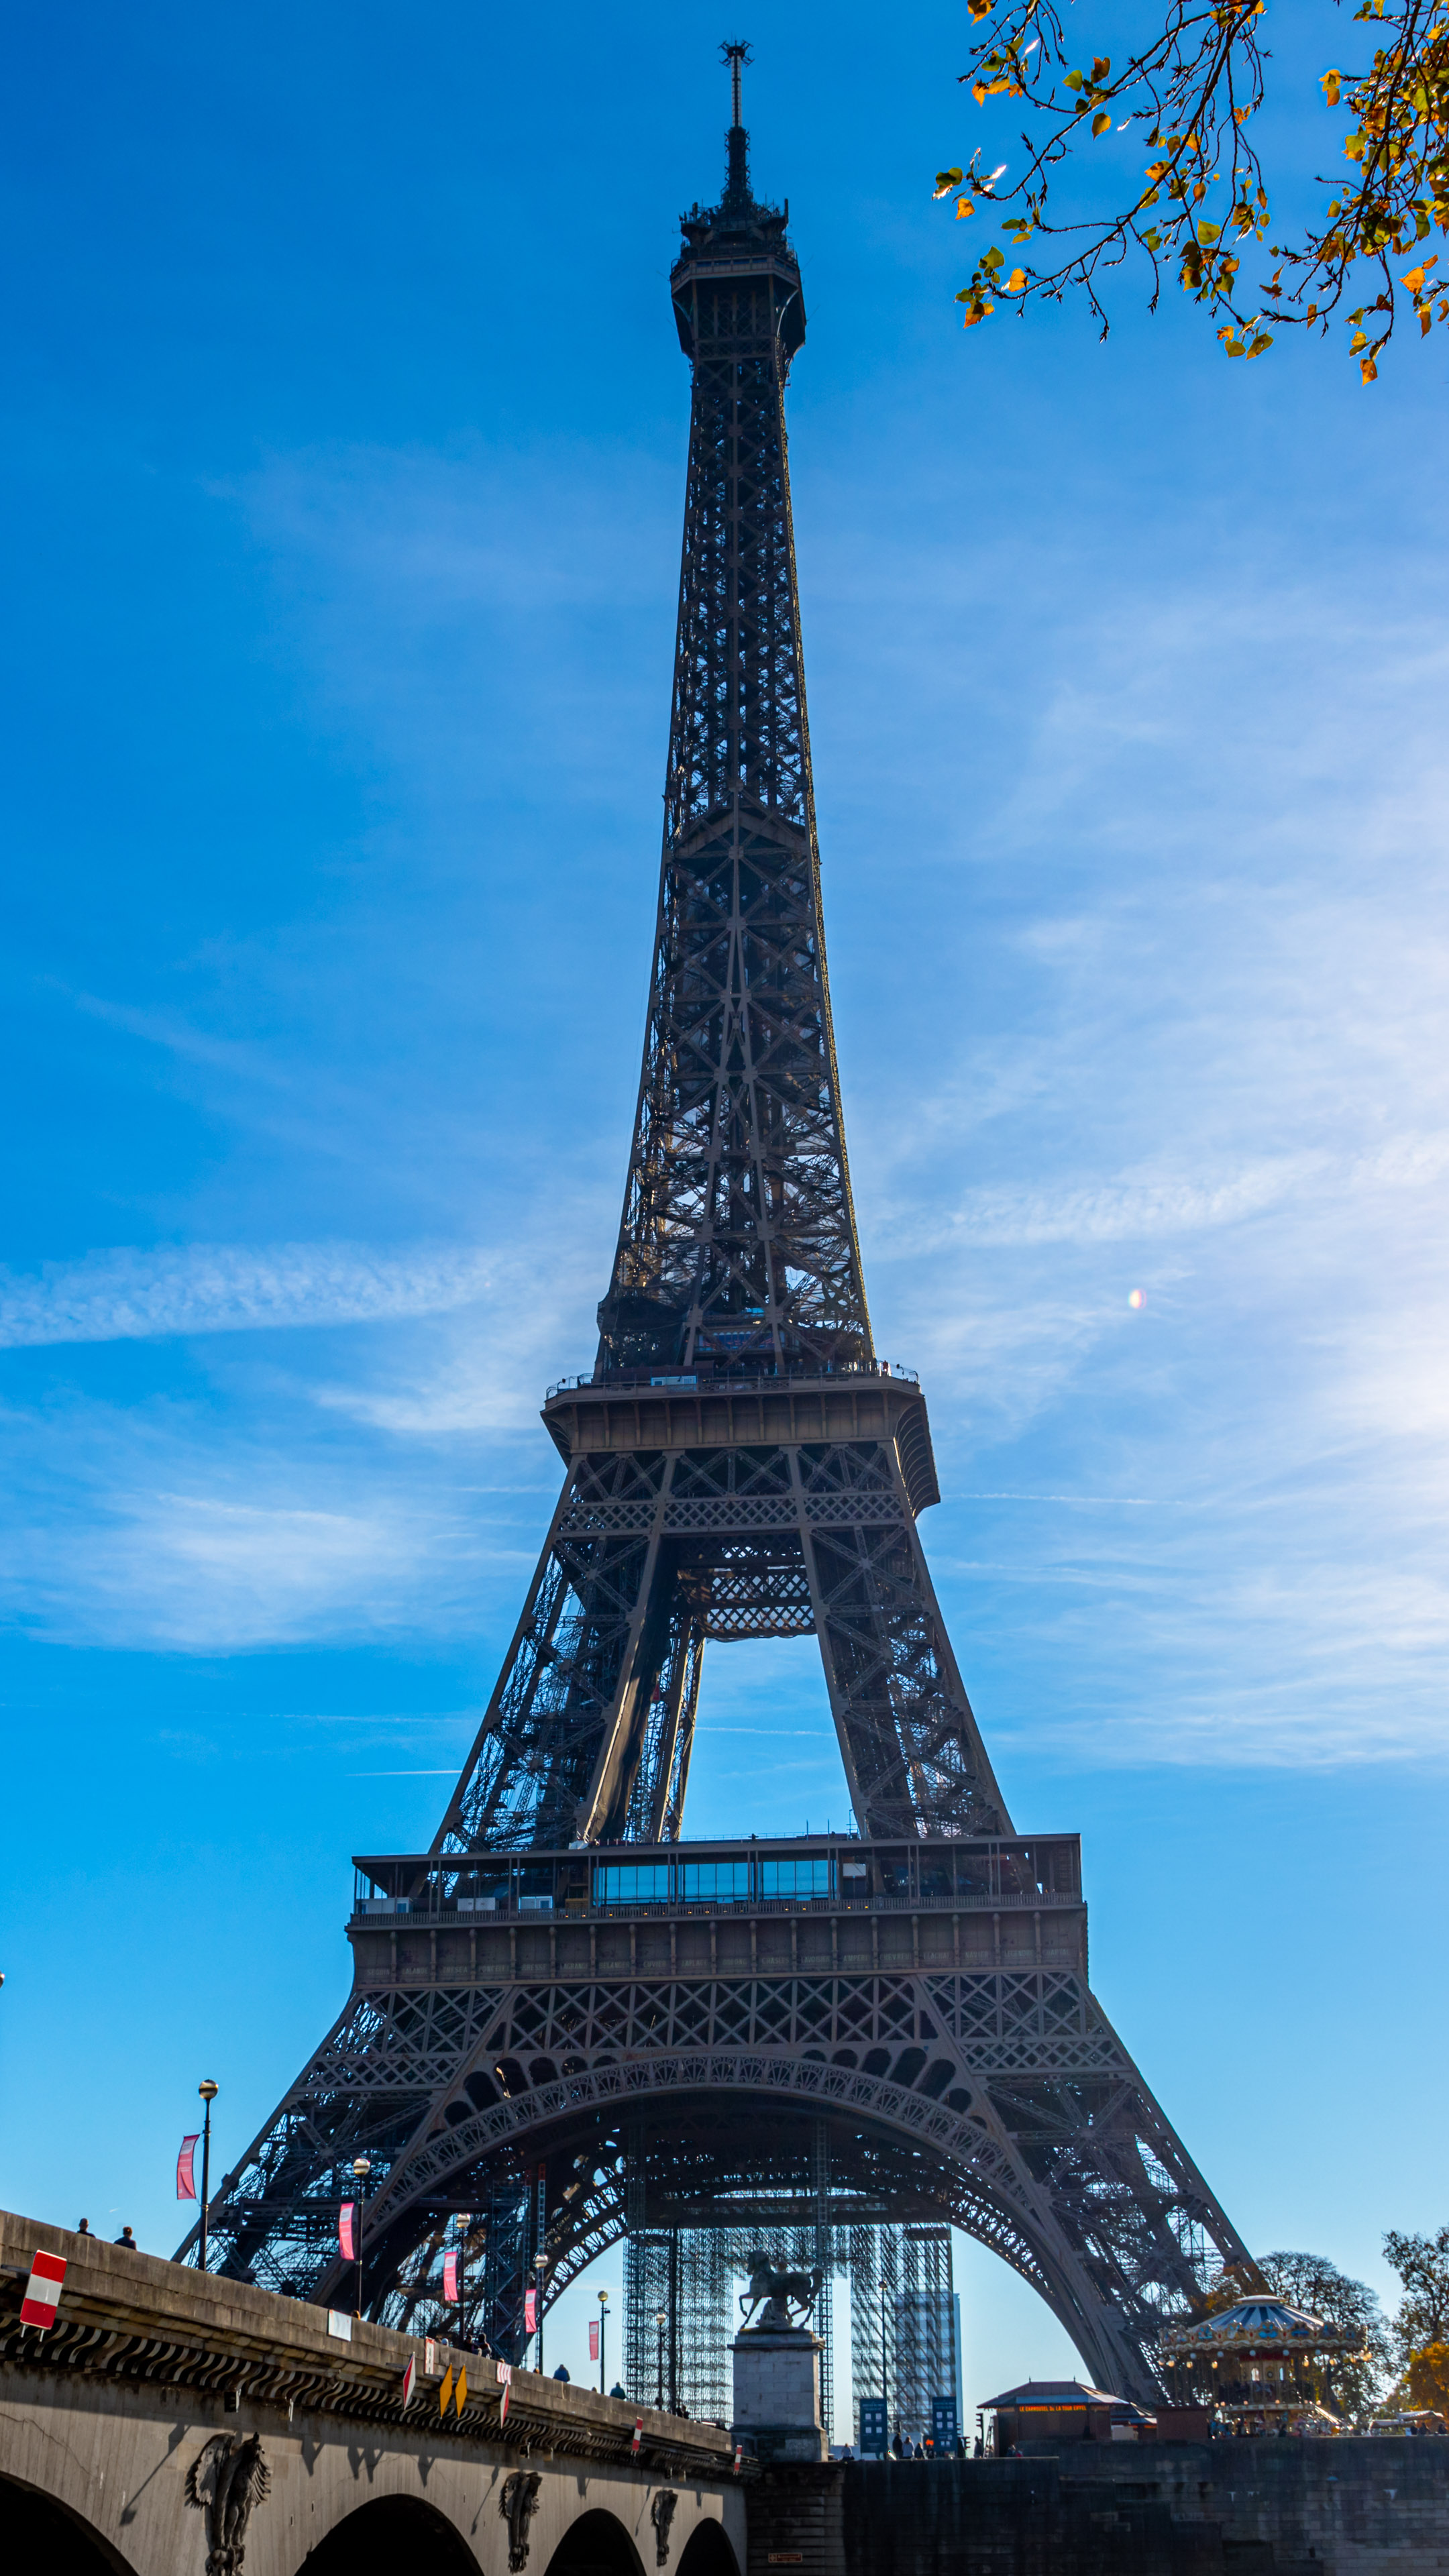 Admirez l'élégance de Paris depuis votre écran avec notre arrière-plan en 4K HD pour iPhone mettant en vedette l'emblématique tour Eiffel.